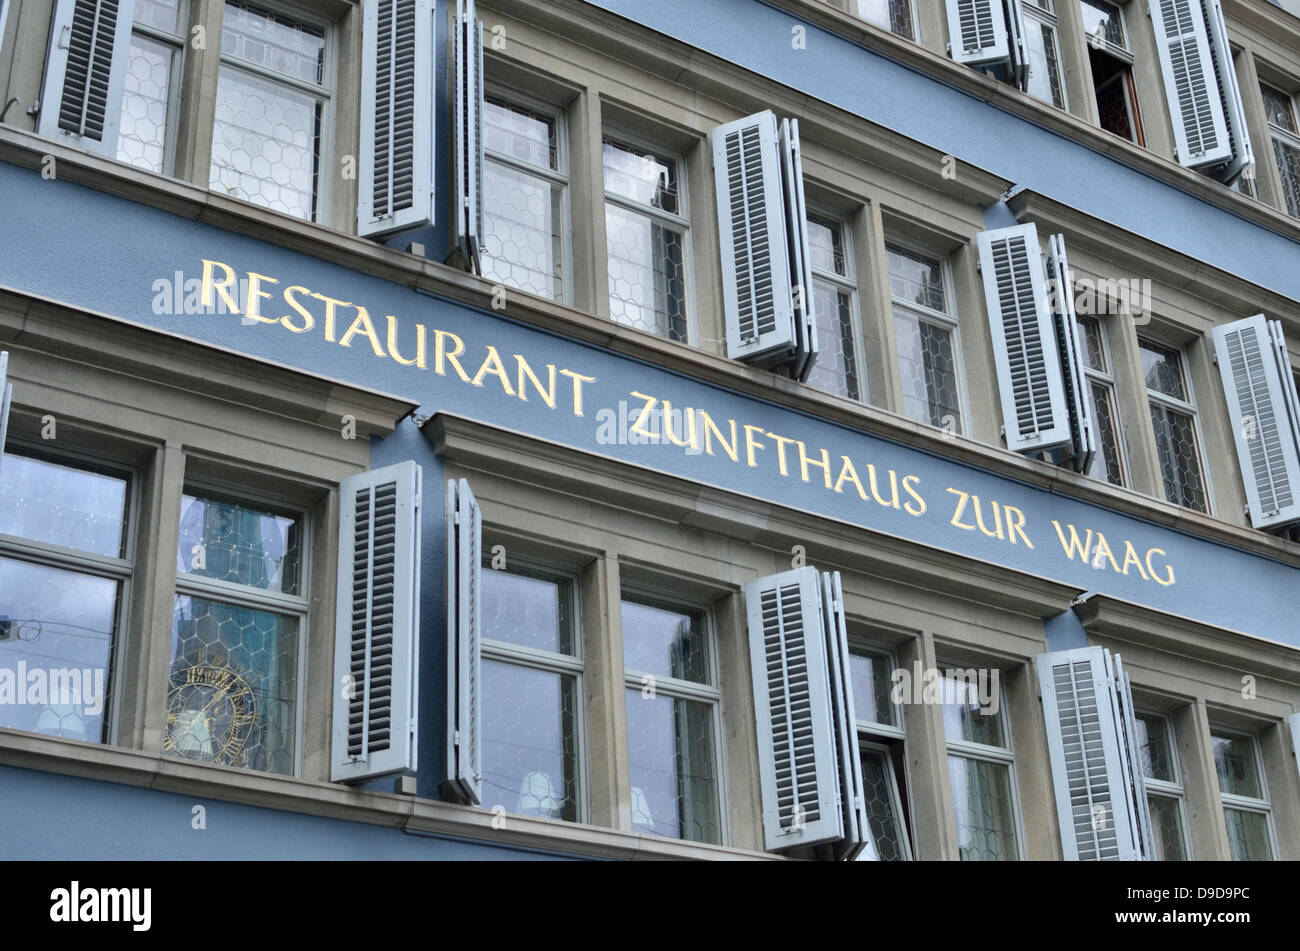 Restaurant Zunfthaus zur Waag, Münsterhof, Zurich, Switzerland. Stock Photo